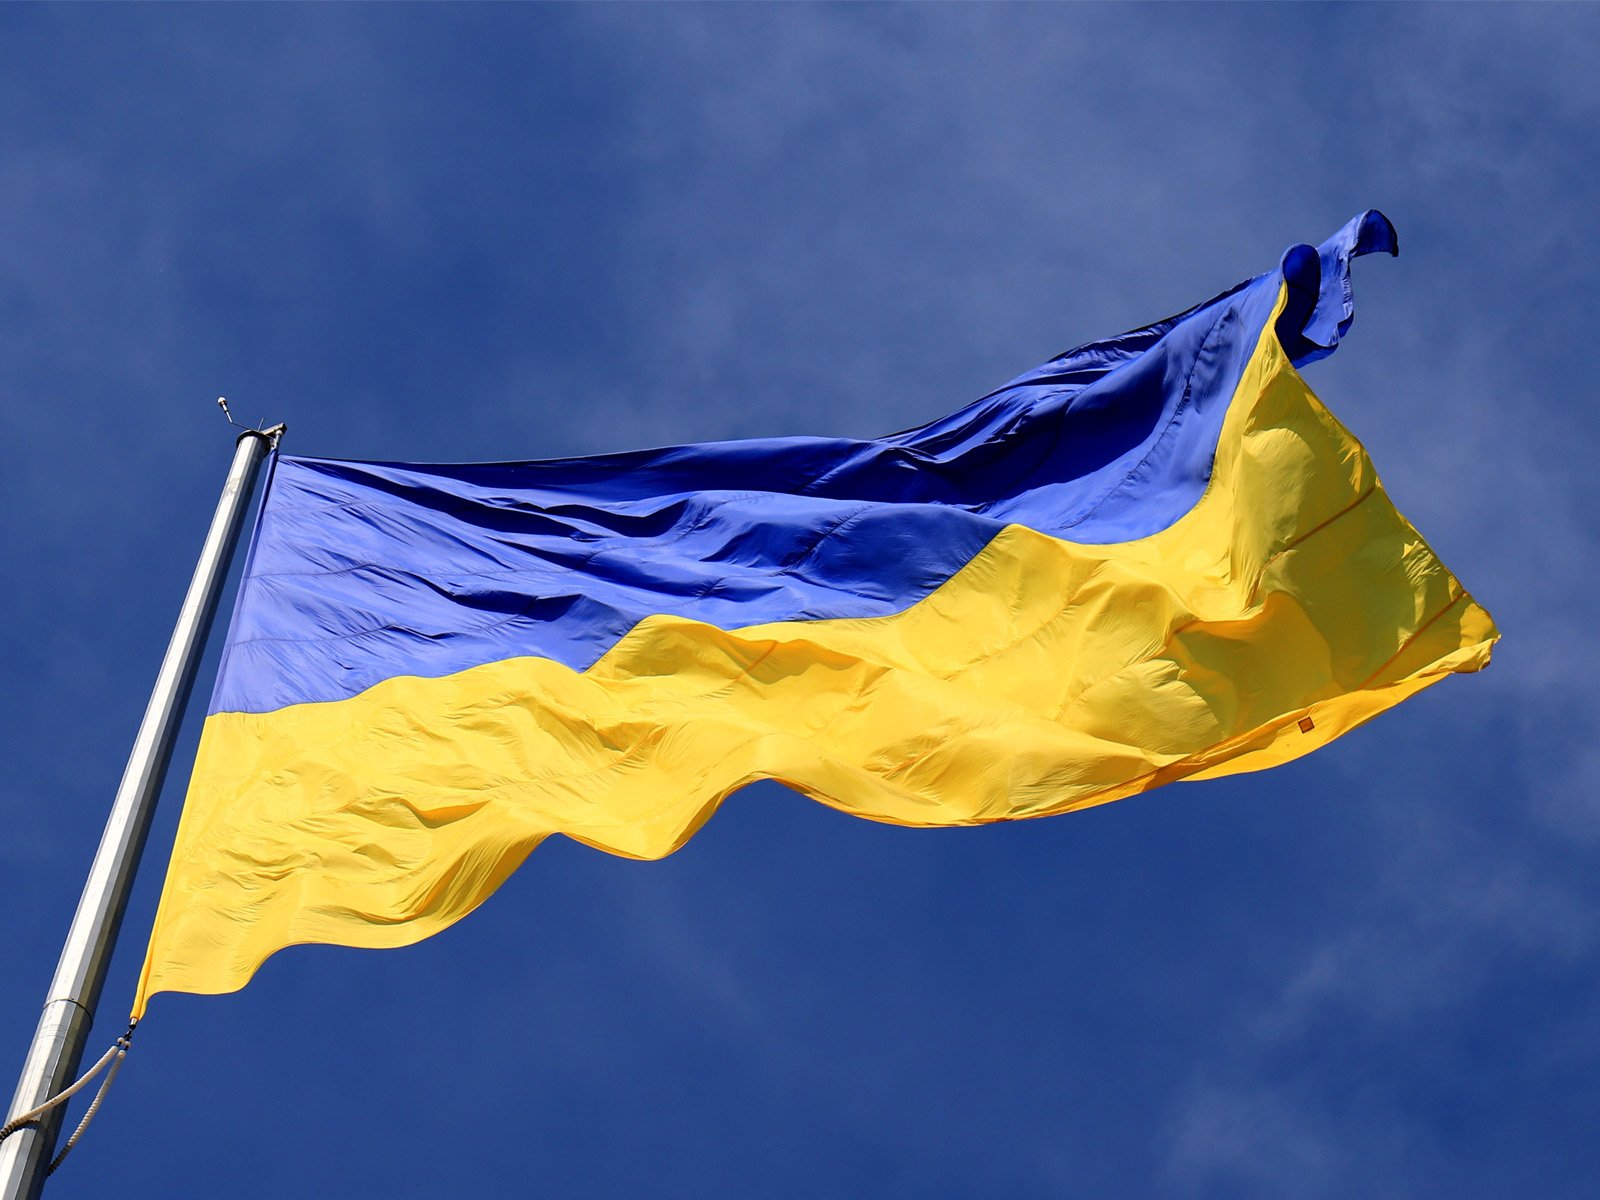 Ukraine: Volodymyr Nebesny